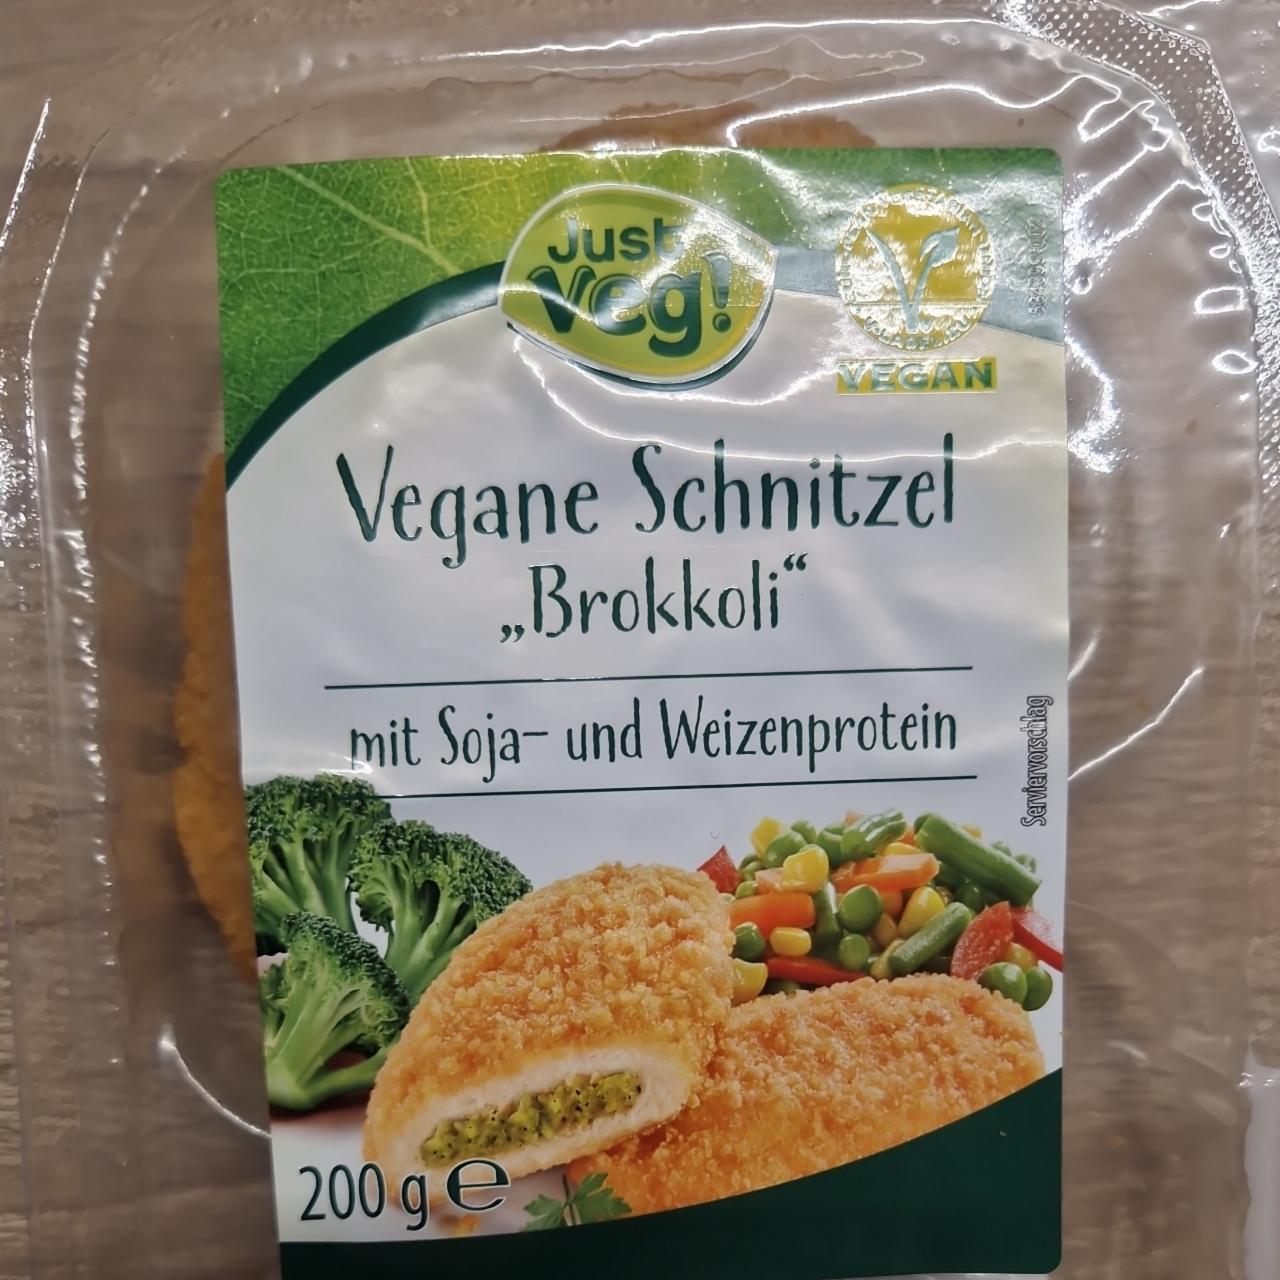 Fotografie - Vegane Schnitzel 'Brokkoli' Just veg!